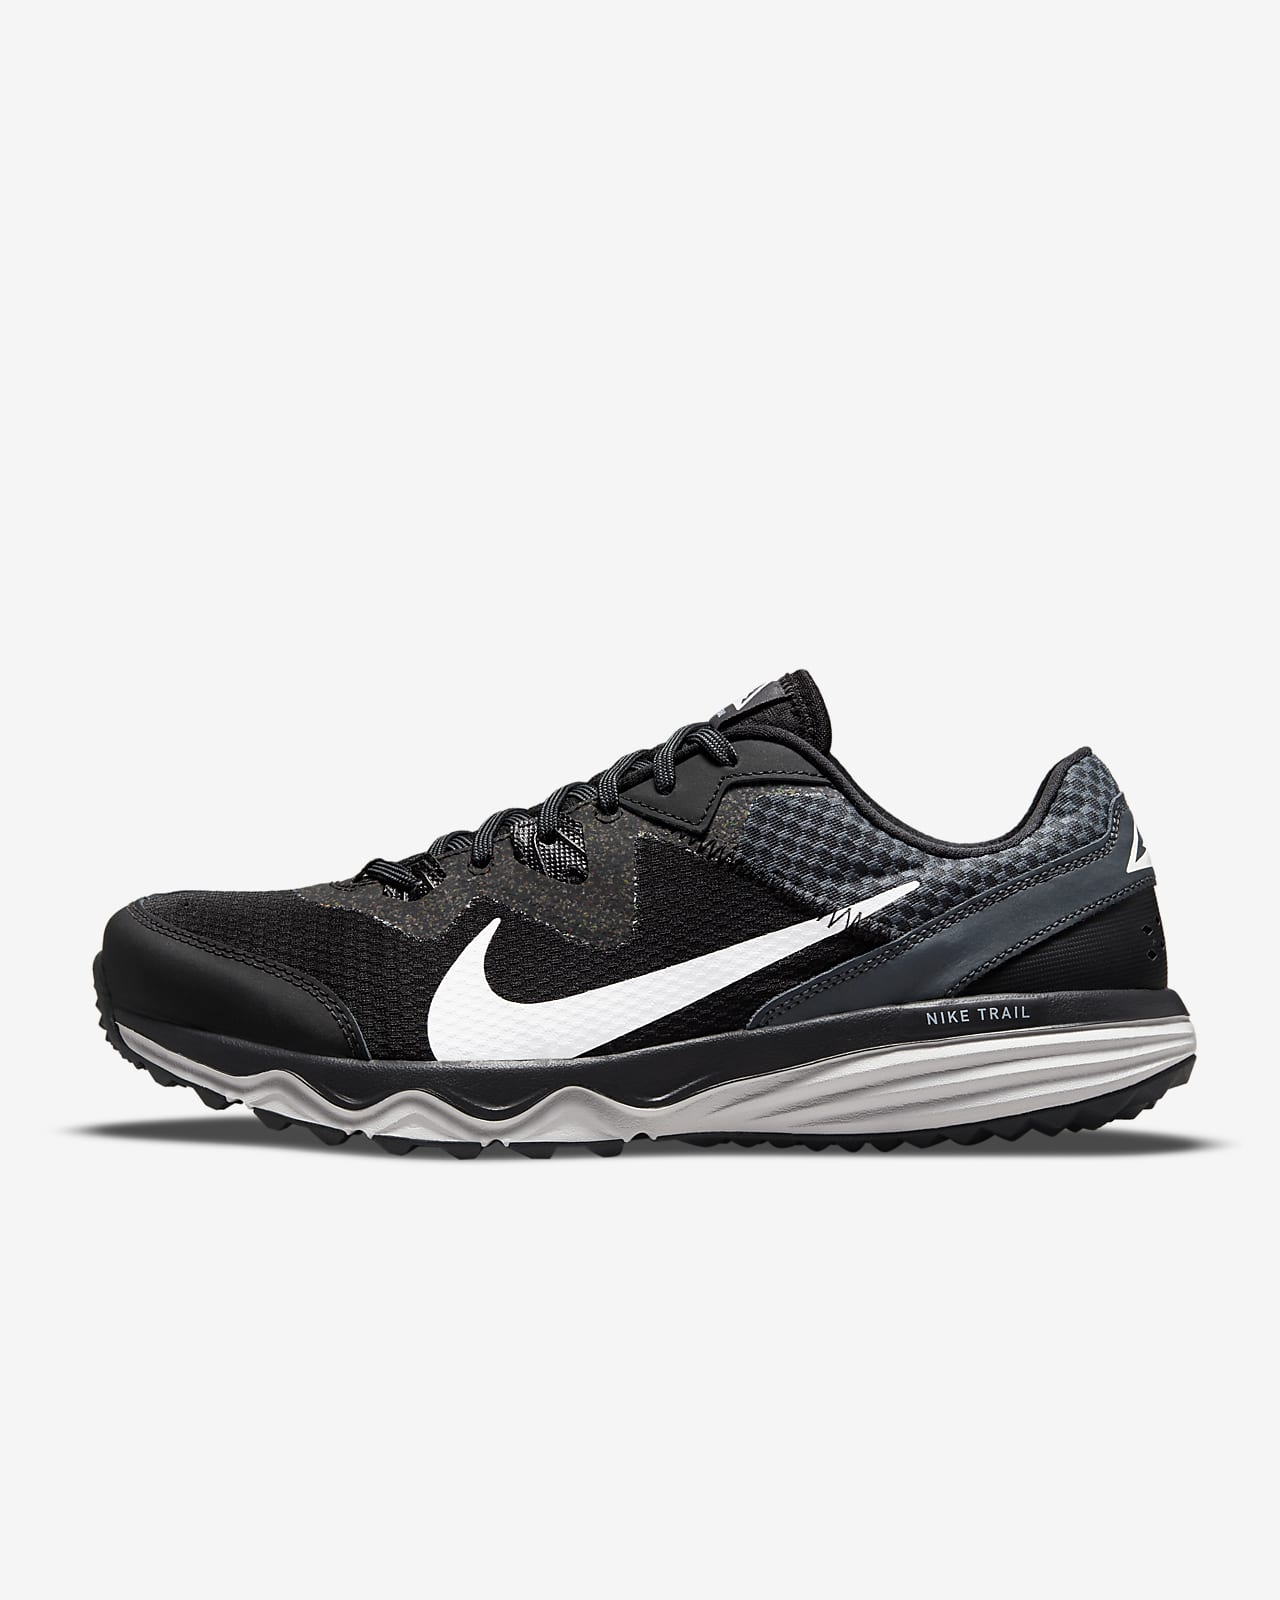 Trail Running Shoe. Nike LU